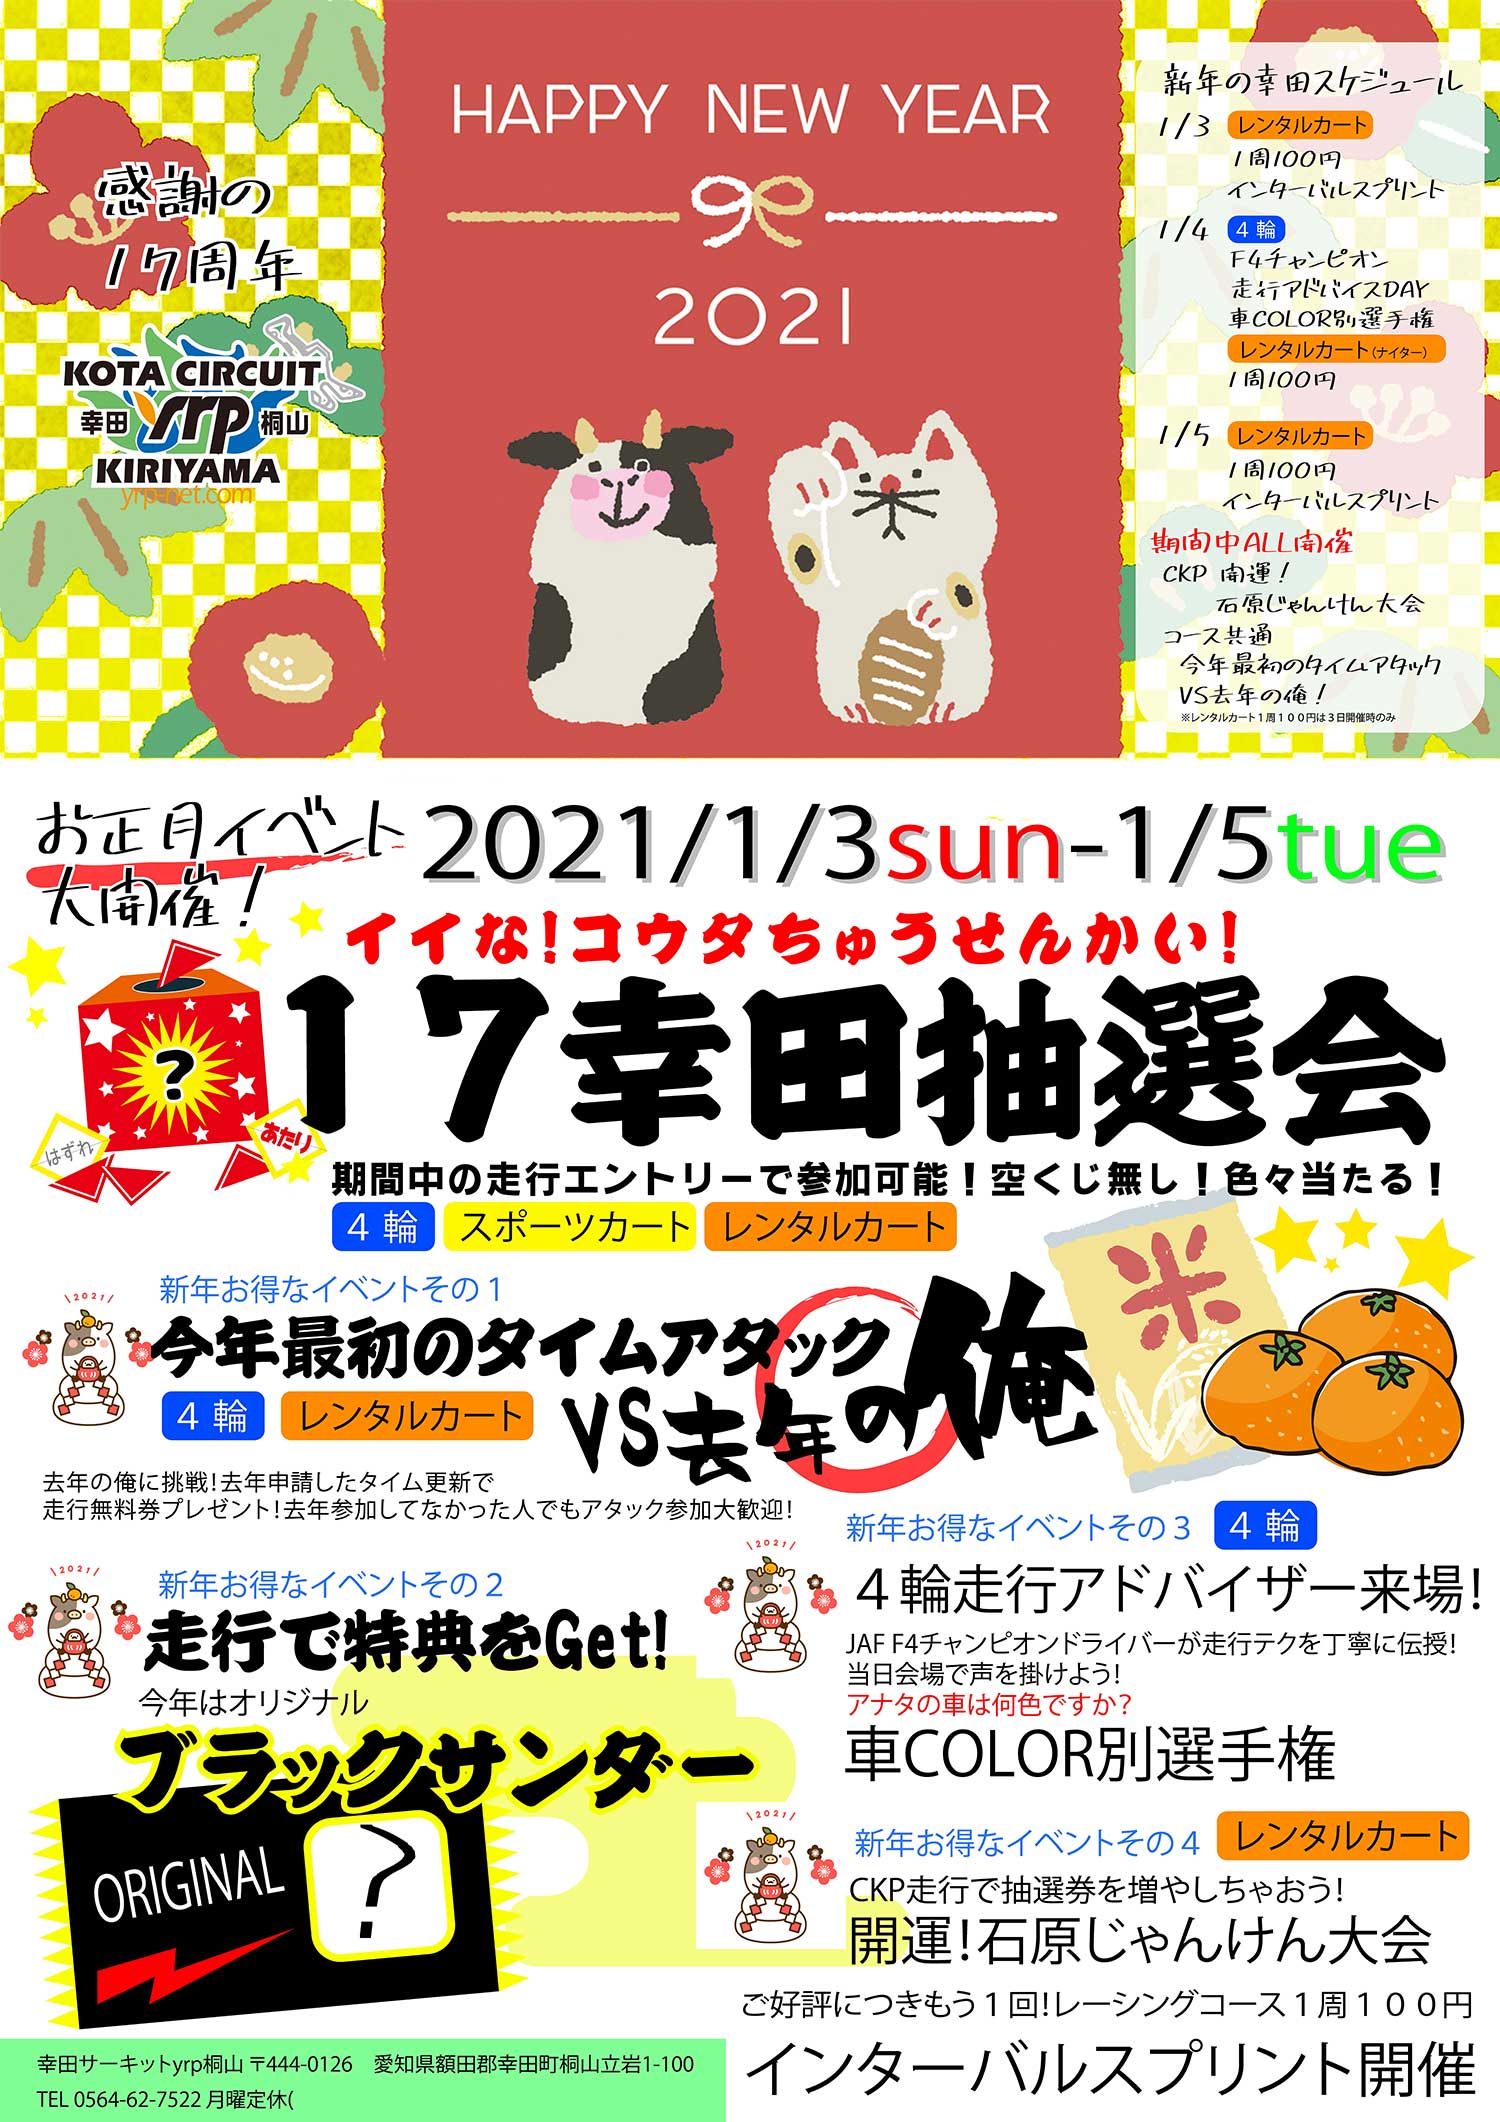 2021年 幸田サーキットyrp桐山 お正月イベント 1月3日(日)から5日(火)